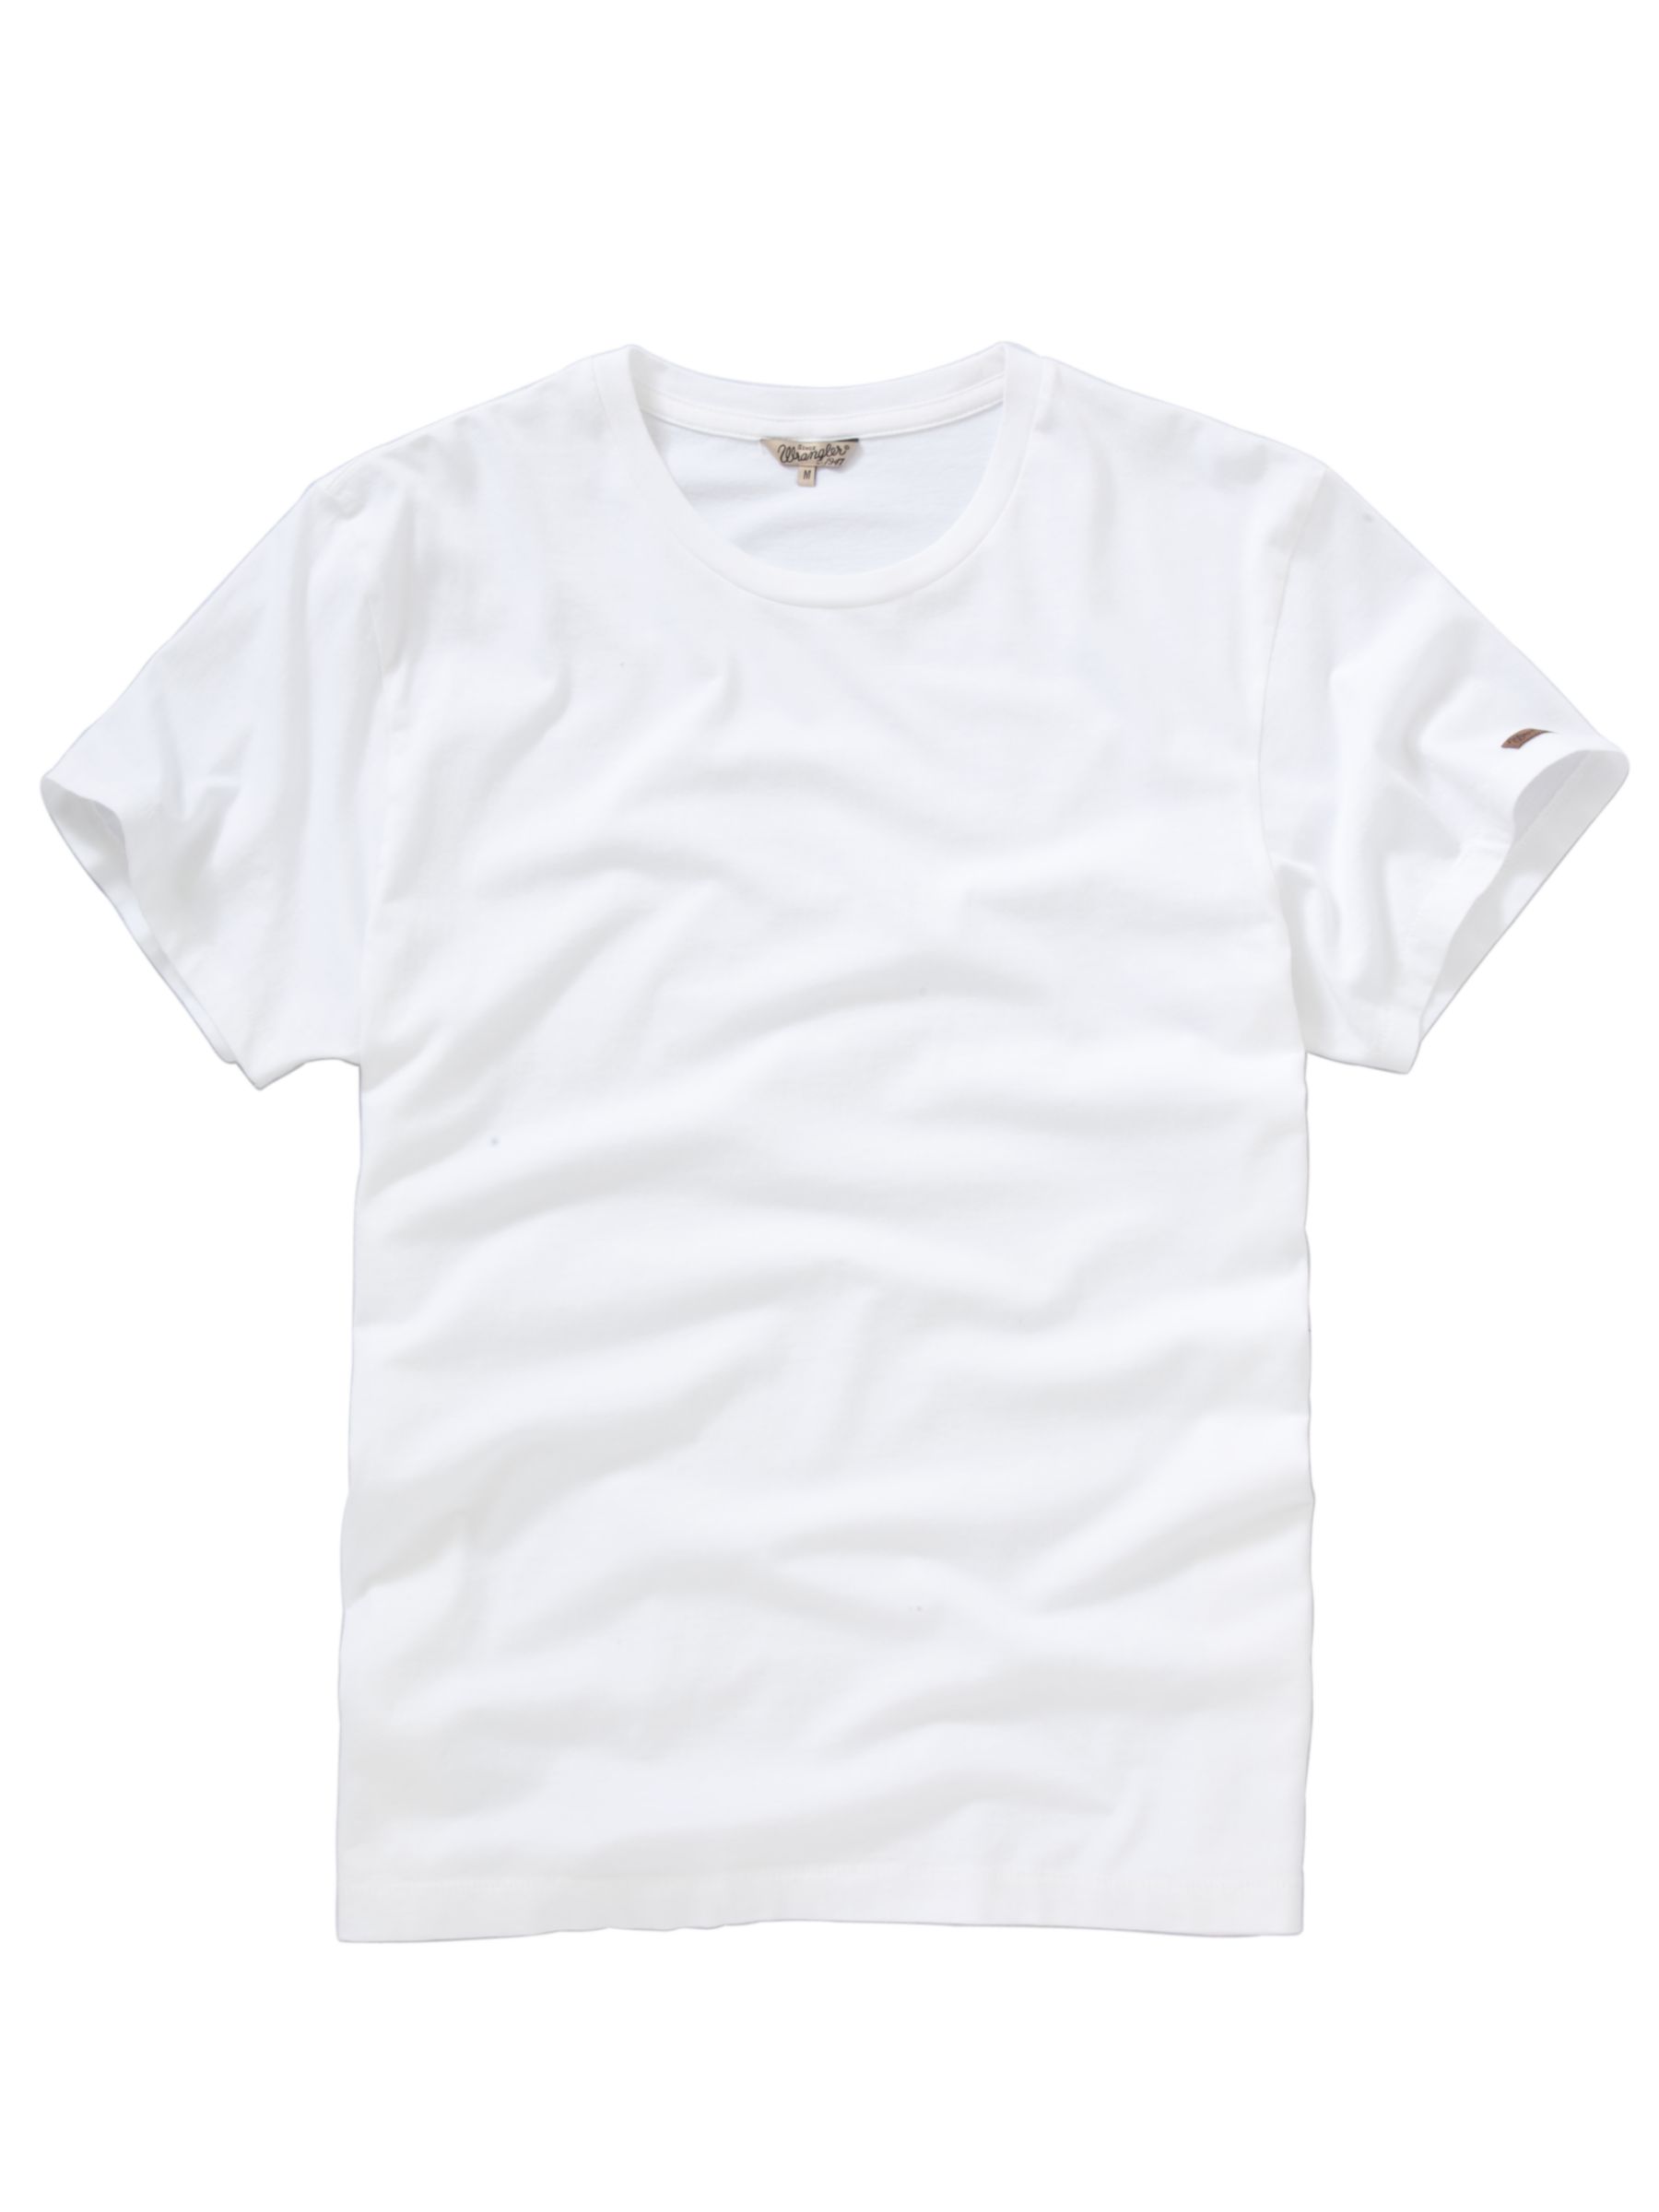 Wrangler Basic T-Shirt, Pack of 2, Black/white